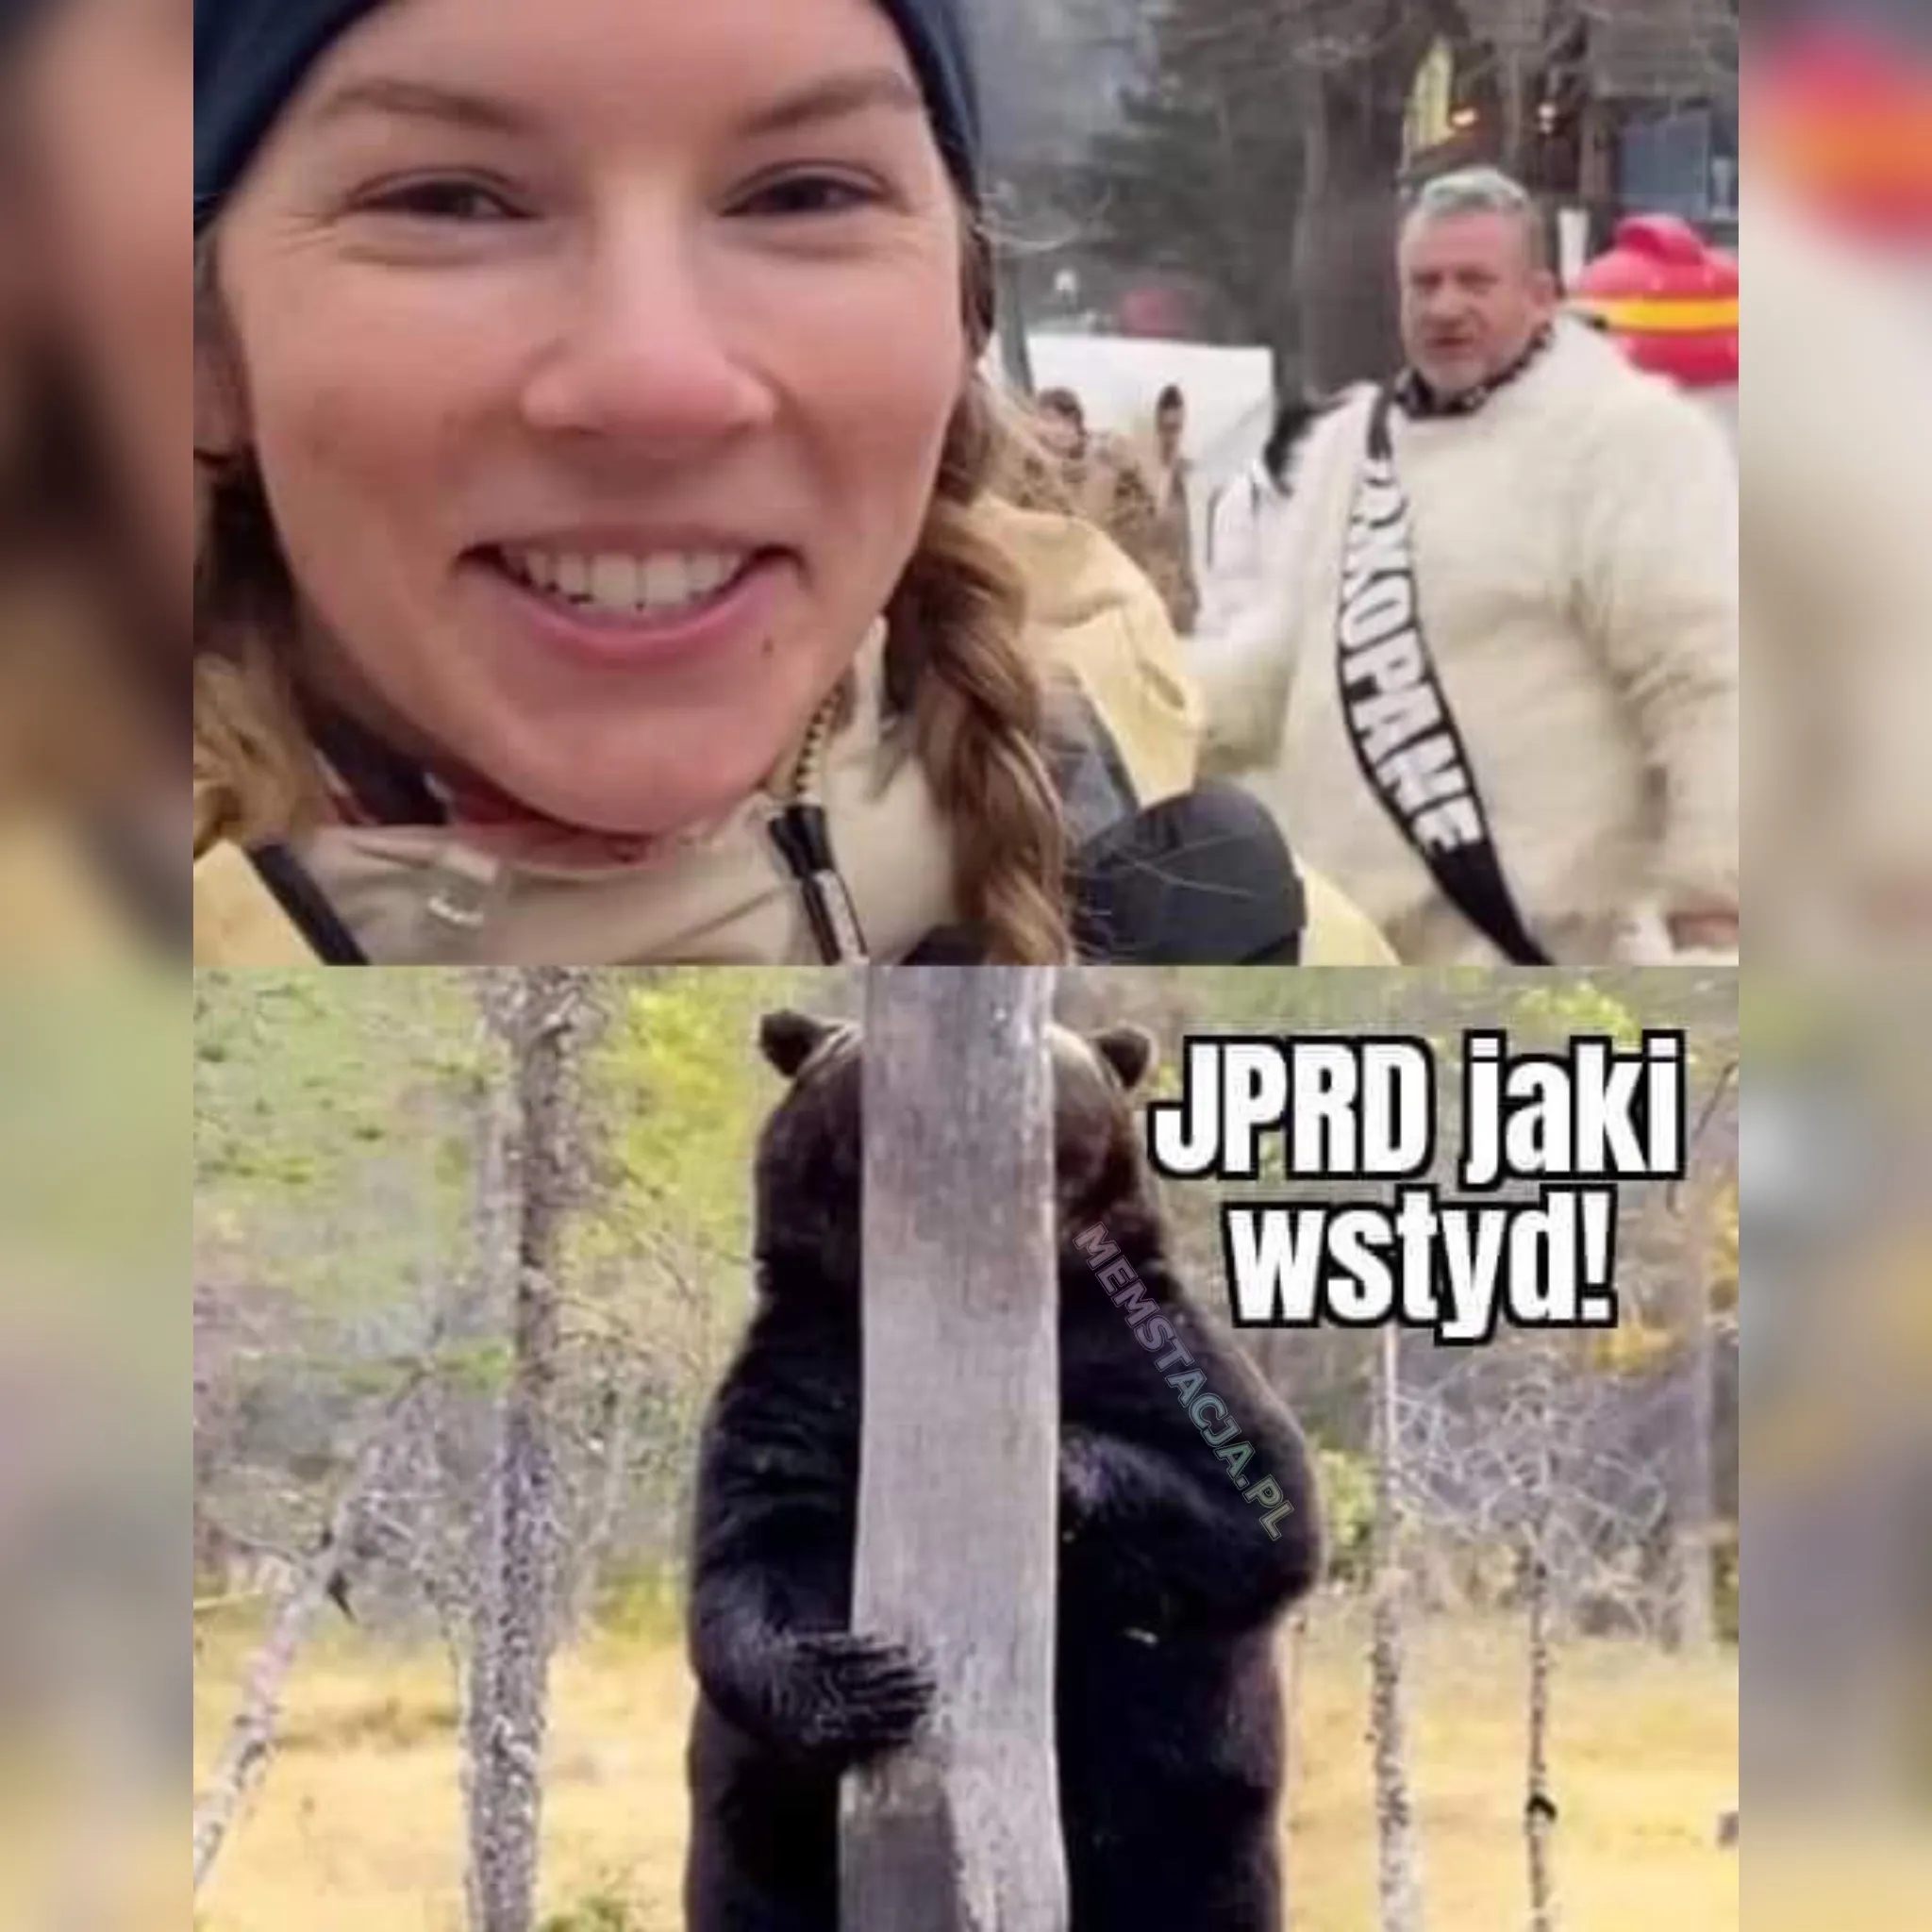 Mem przedstawiający kobietę, miśka z Zakopanem oraz dzikiego misia: 'JPRD jaki wstyd!'